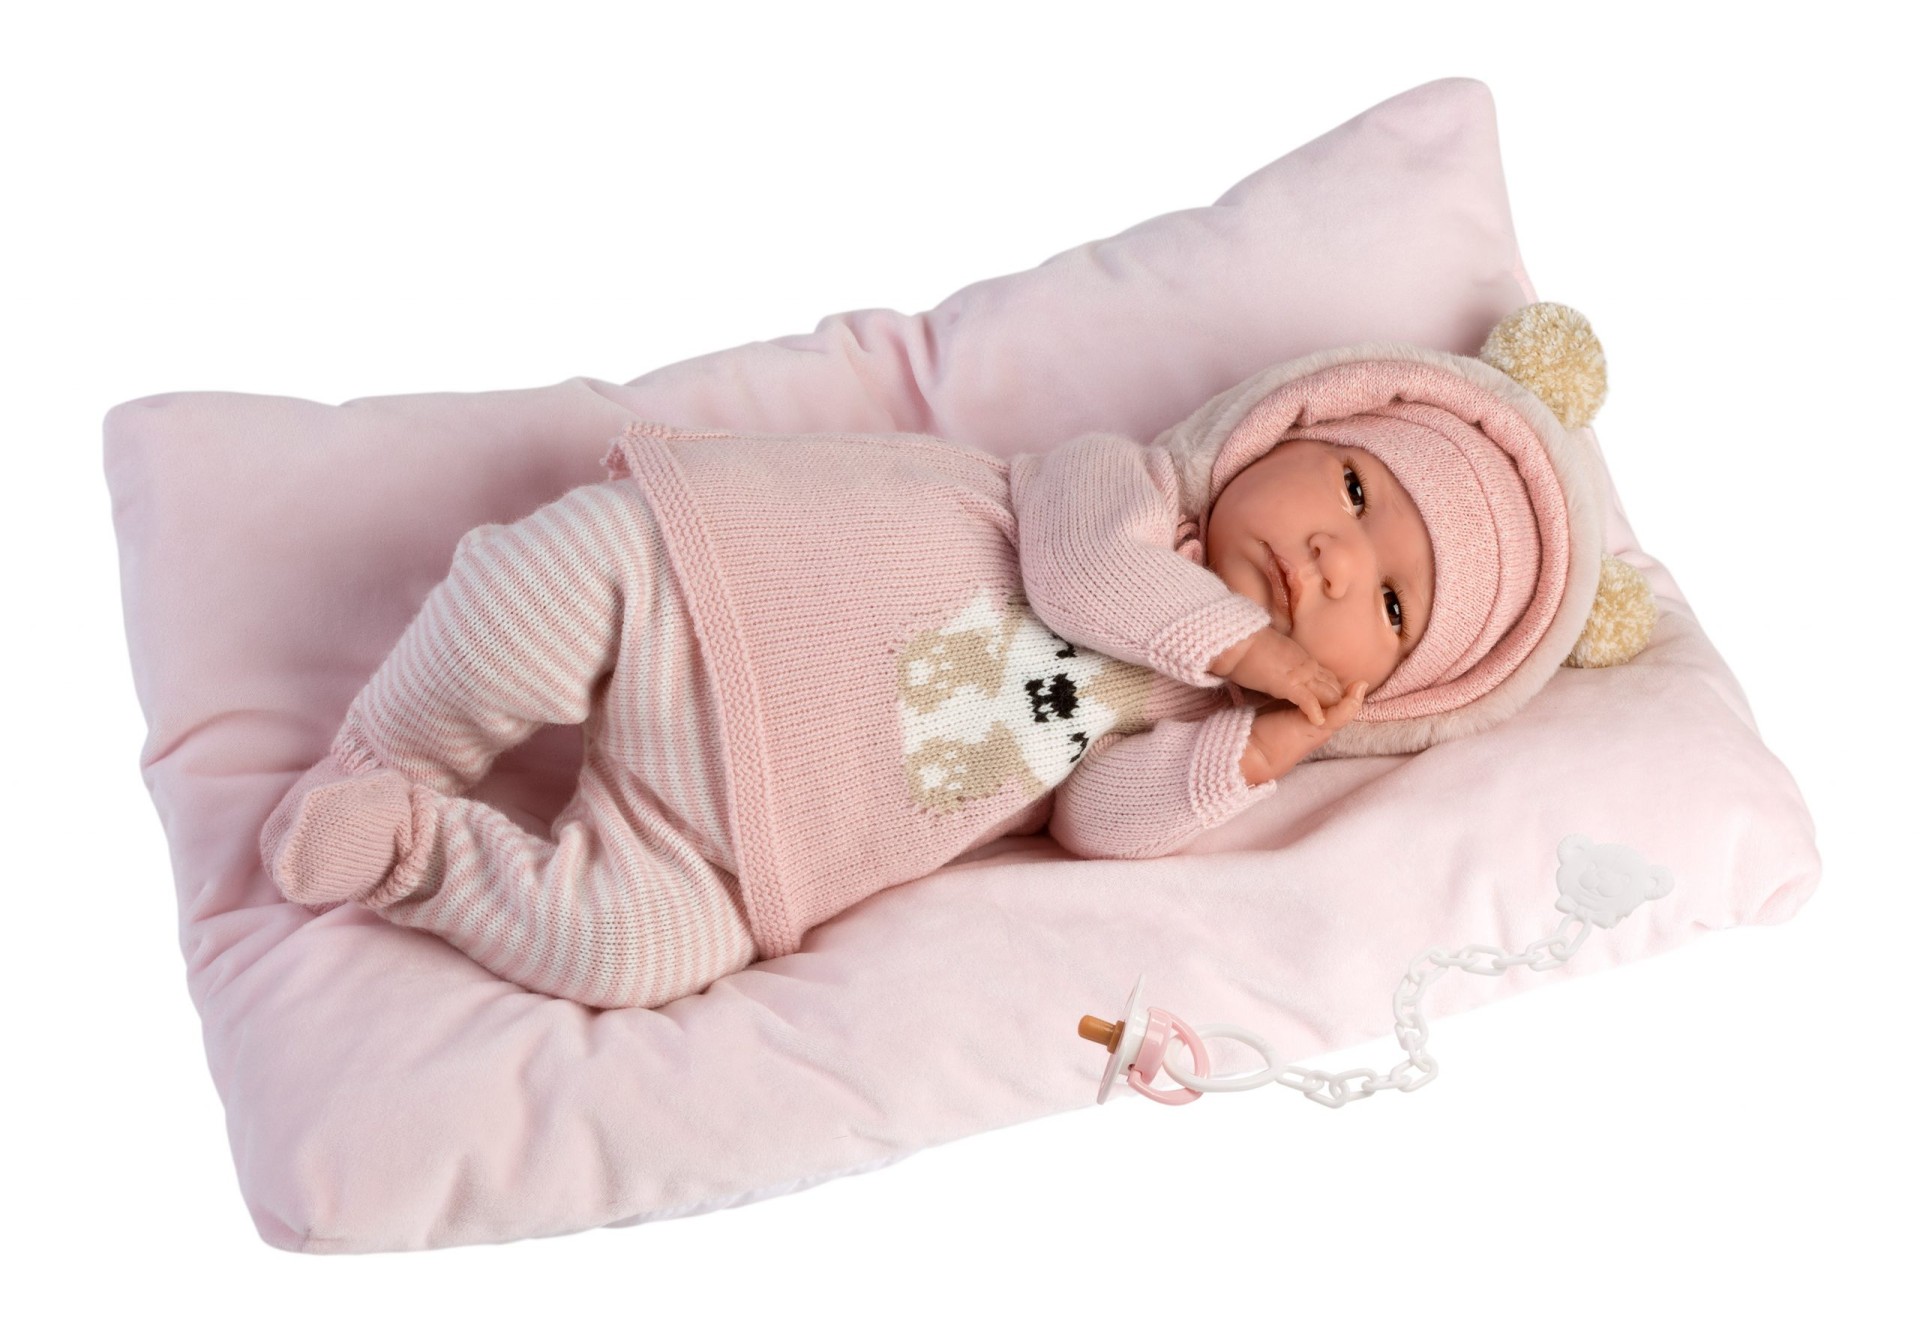 Ρεαλιστικό Μωρό 42cm Reborn Baby Doll Limited Edition, Llorens